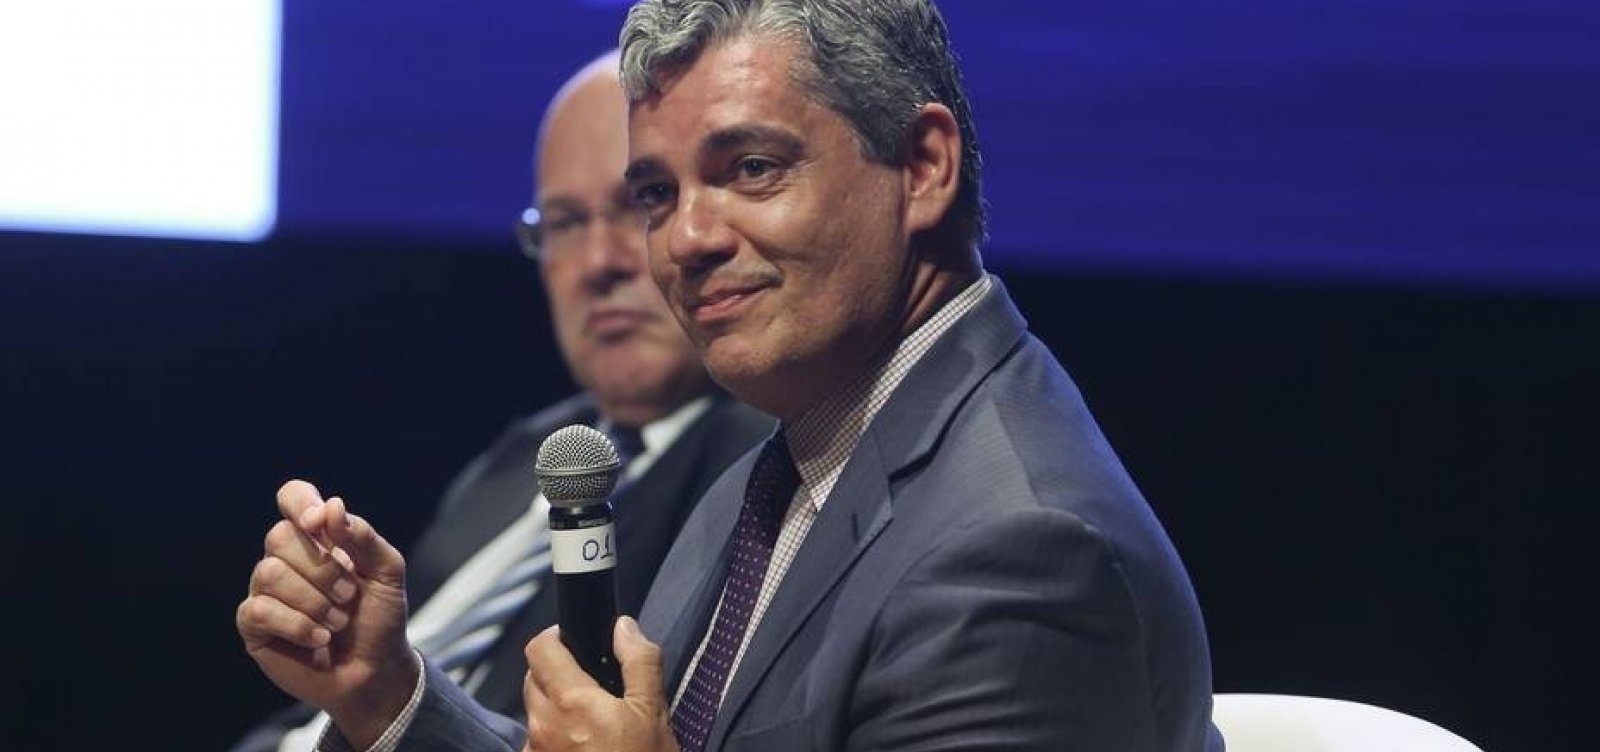 Brasil e México iniciam negociações de livre comércio, afirma Troyjo